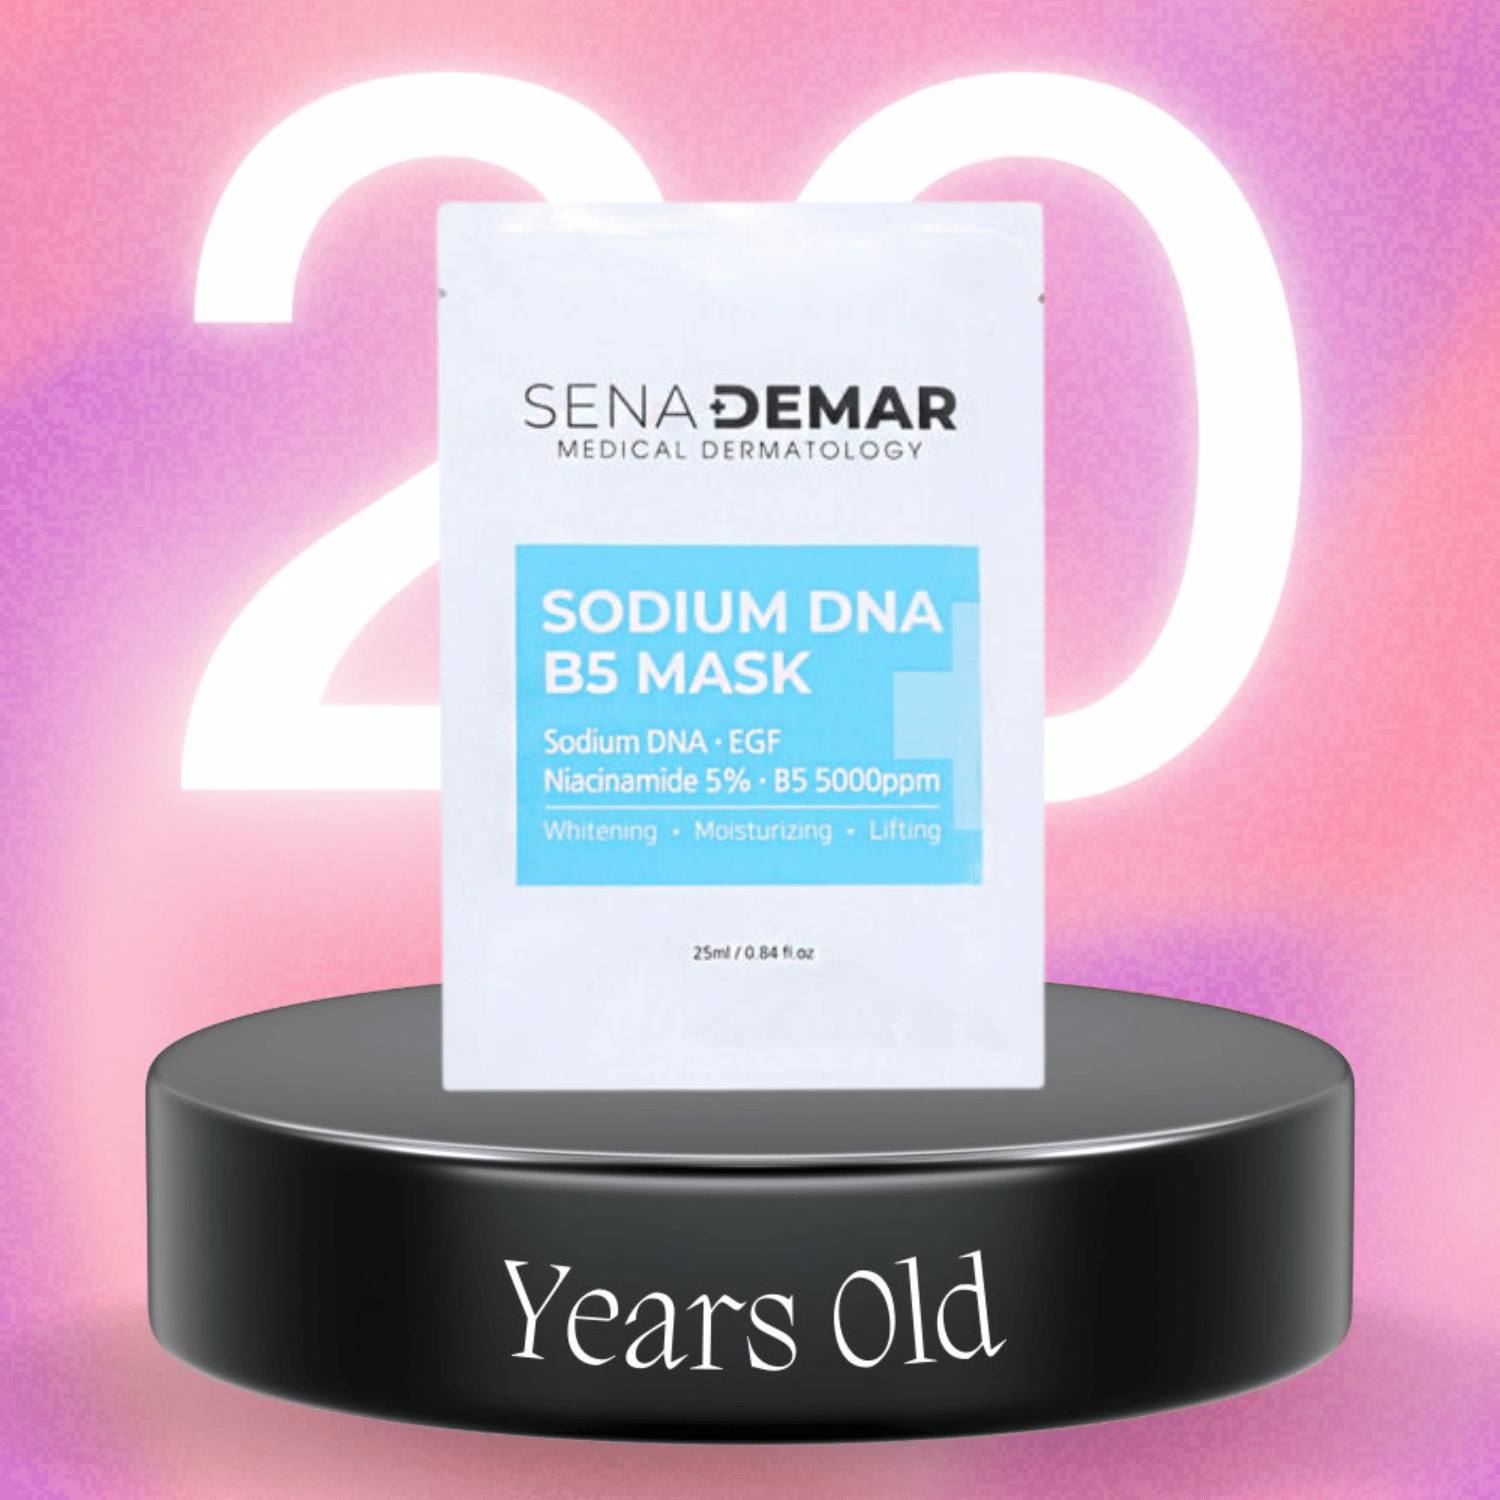 Mặt Nạ Phục Hồi Sena Demar Sodium DNA B5 Mask - Tách Lẻ 1 Miêng